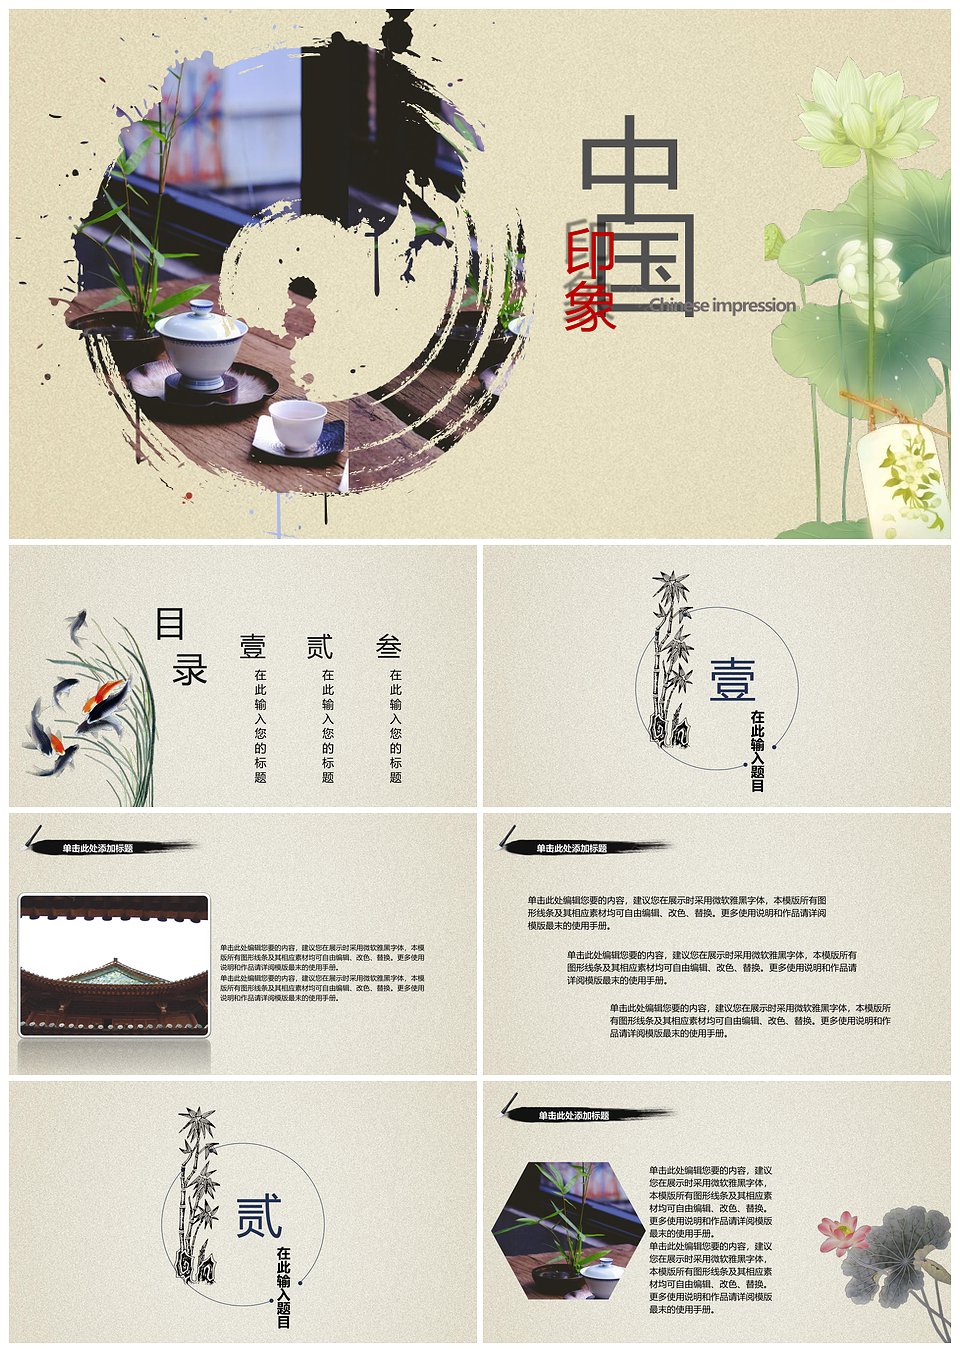 中国印象传统文化教育教学总结汇报PPT模板模板下载,中国印象传统文化教育教学总结汇报PPT模板,模板下载,第1张